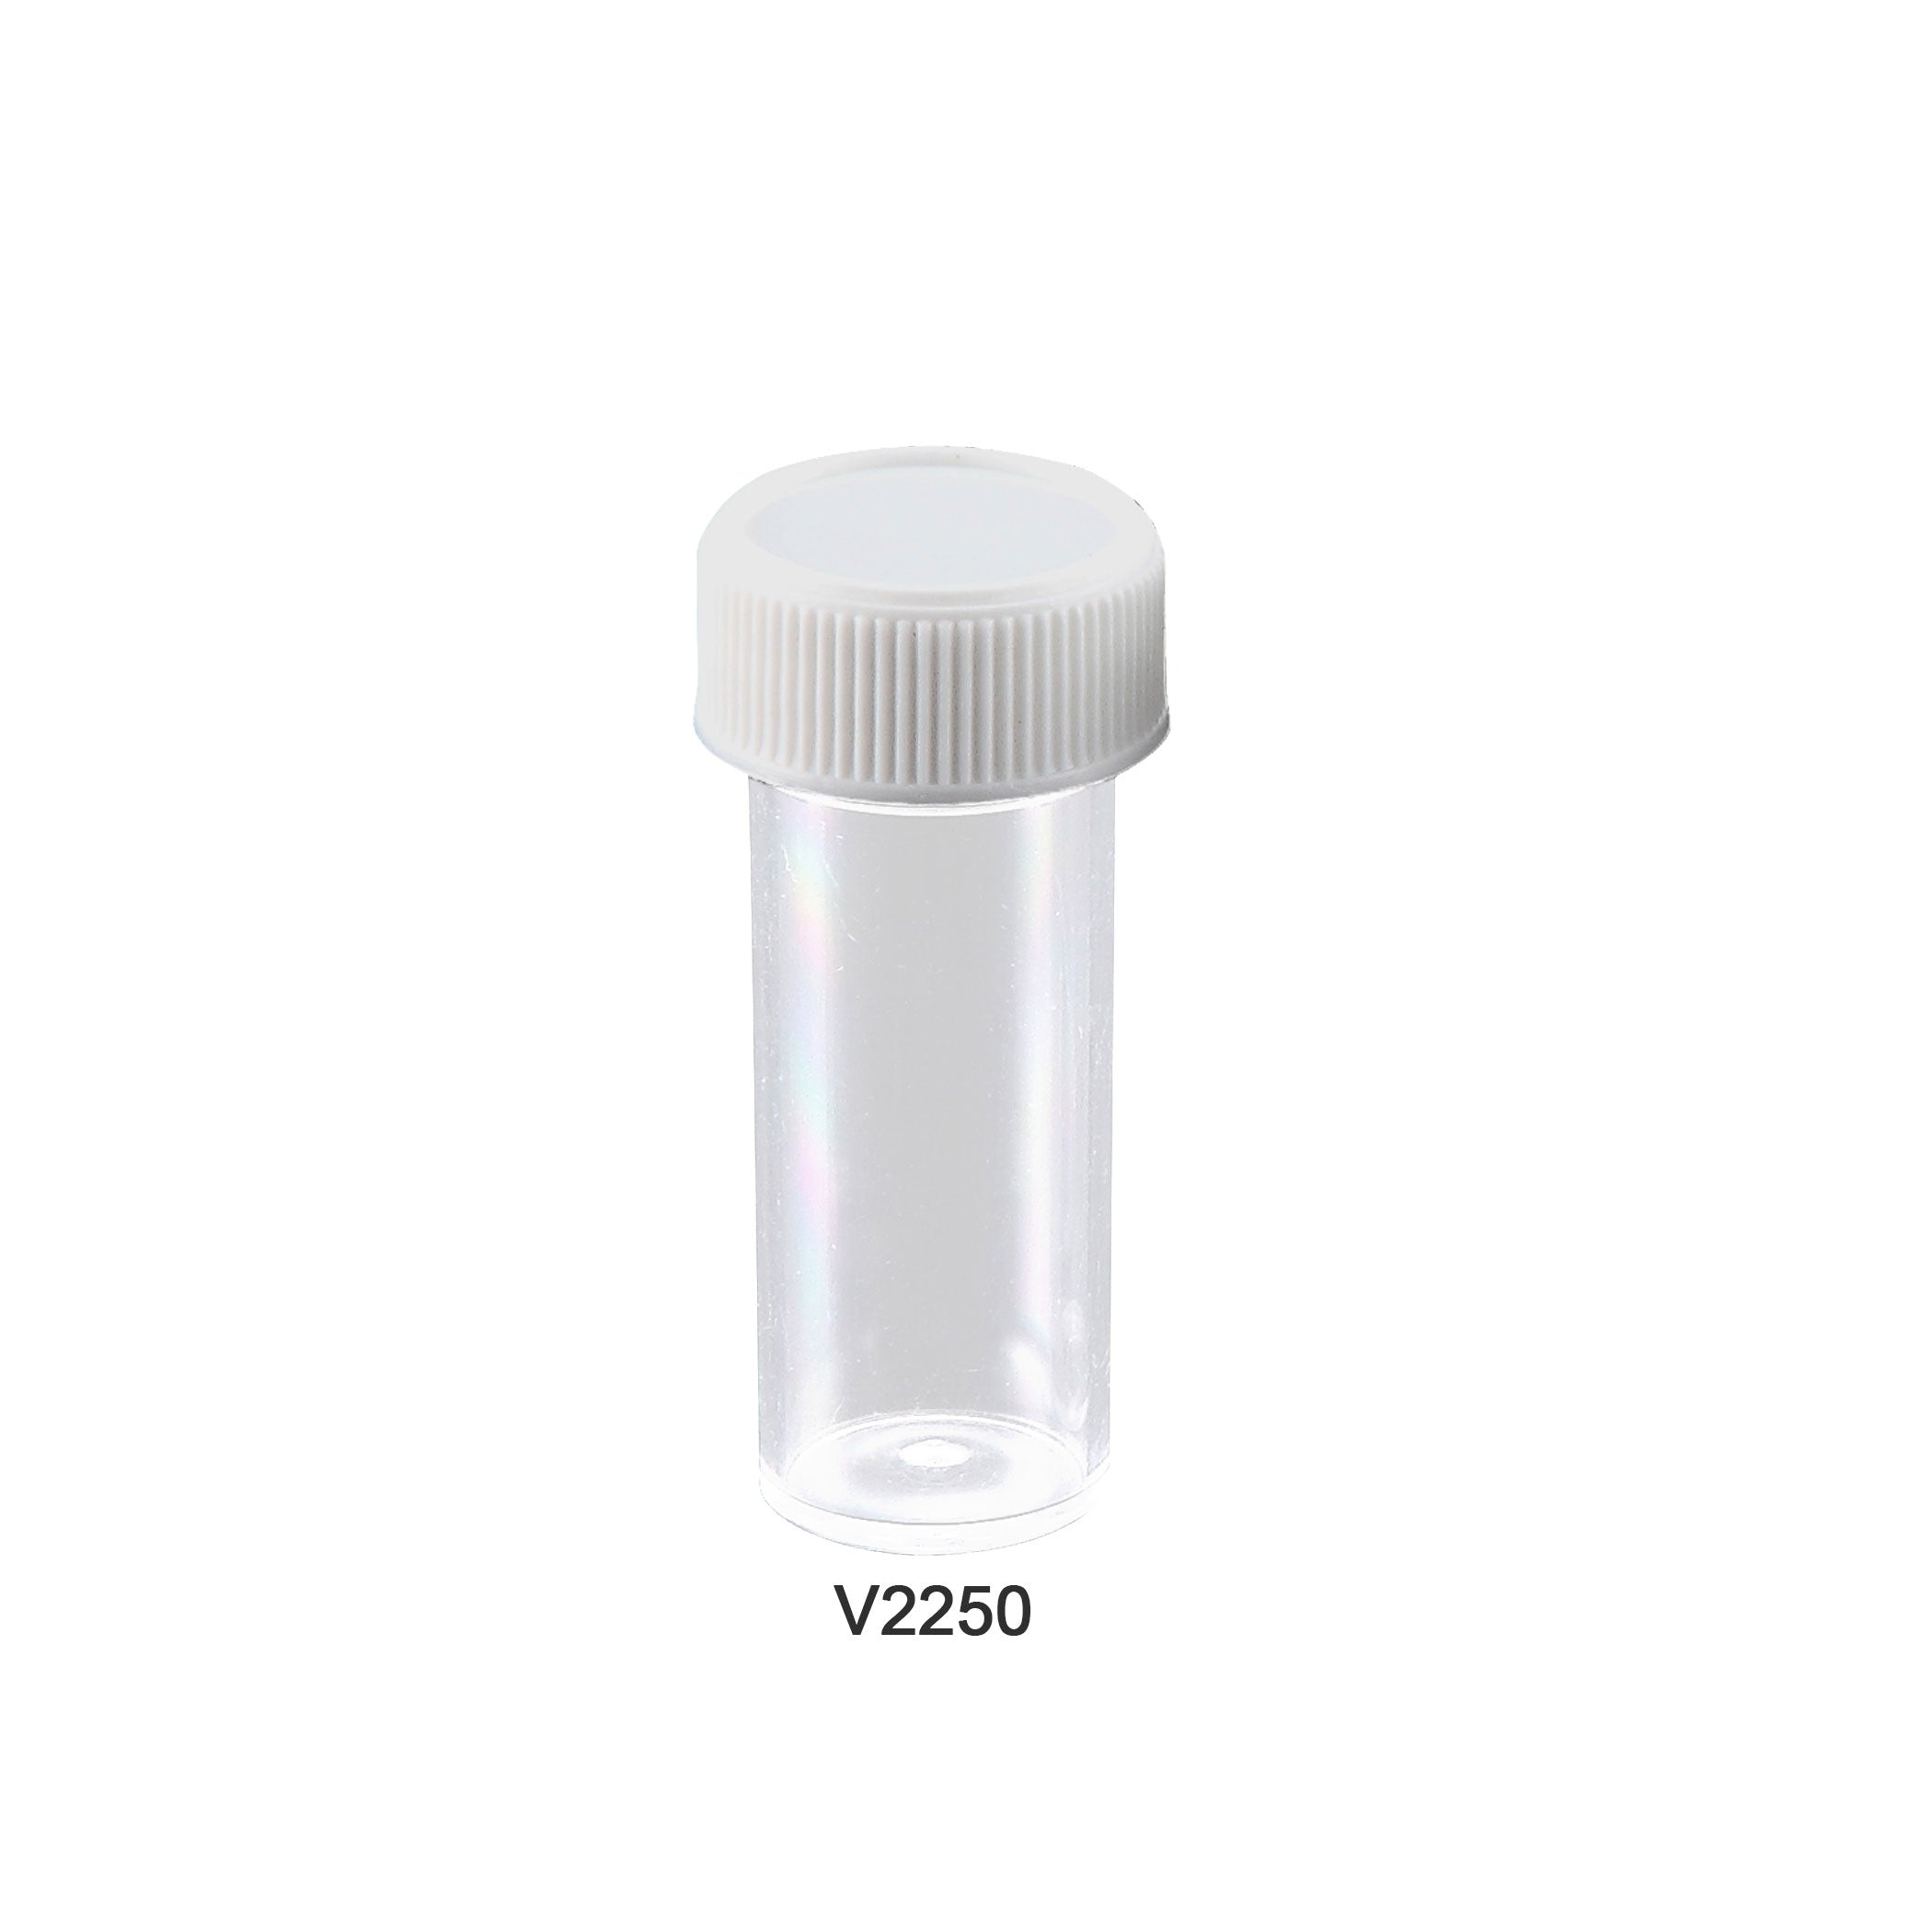 MTC Bio V2250, Specimen/Transport Vial, 17x50mm, 7ml, Ps, Non-Graduated, with Attached Screw-Cap, Non-Sterile, Ce, Non-Toxic, Bulk Pack of 700